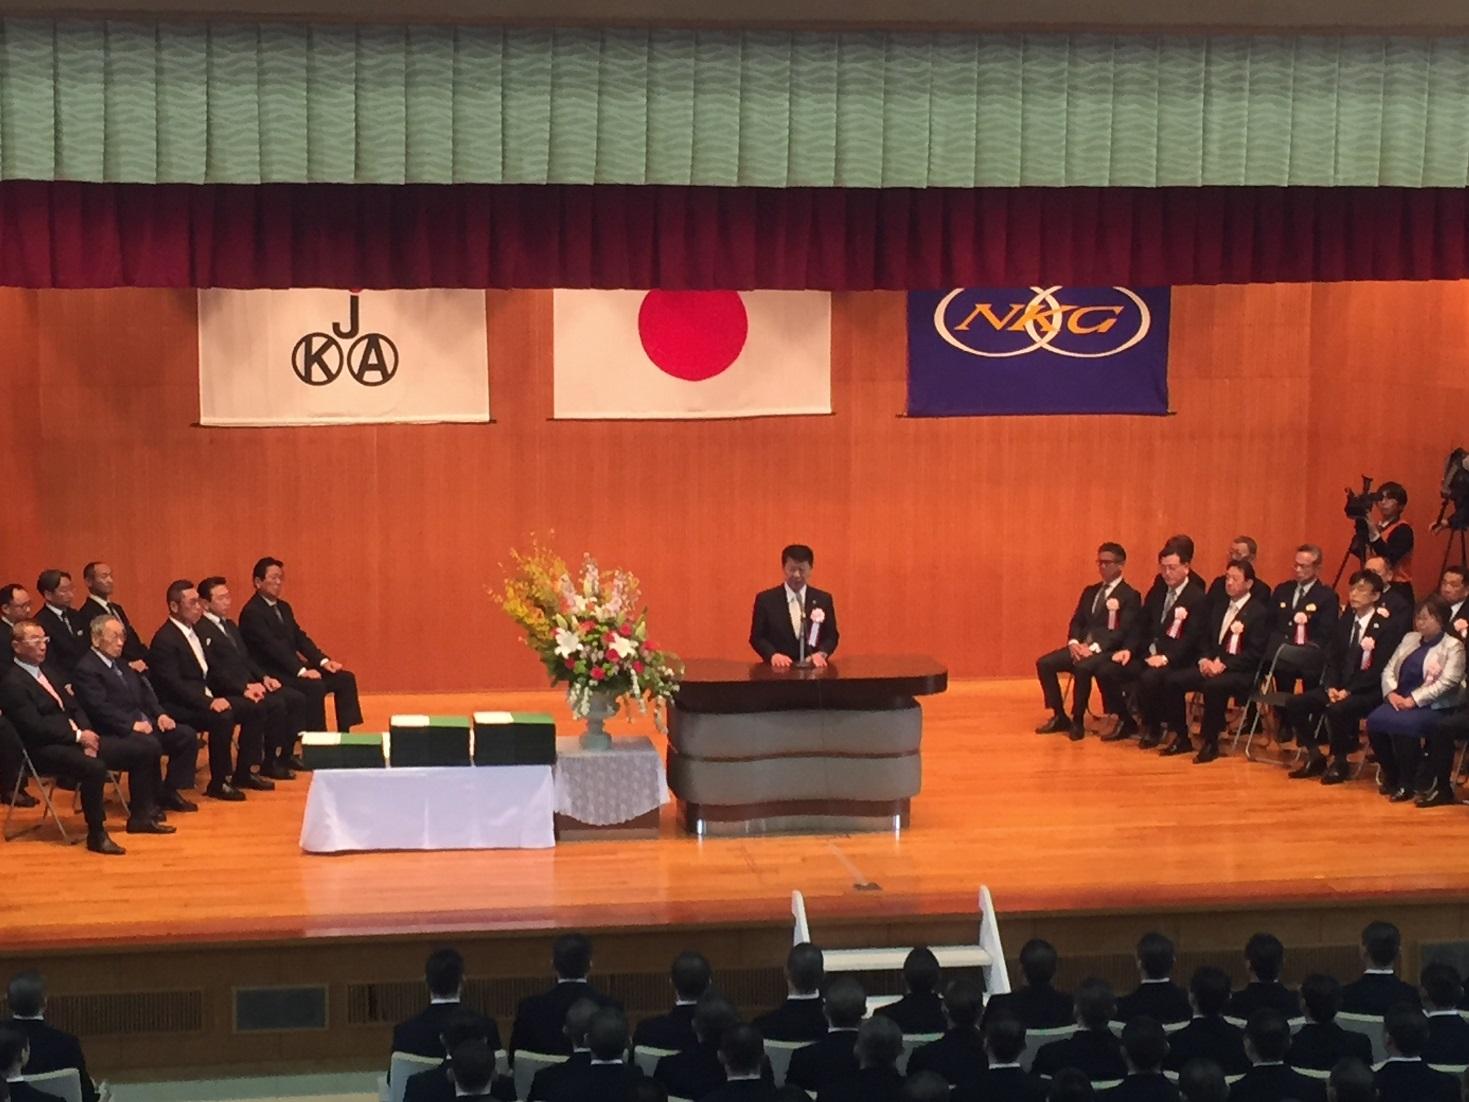 日本競輪学校の卒業式で挨拶する伊東市長の写真